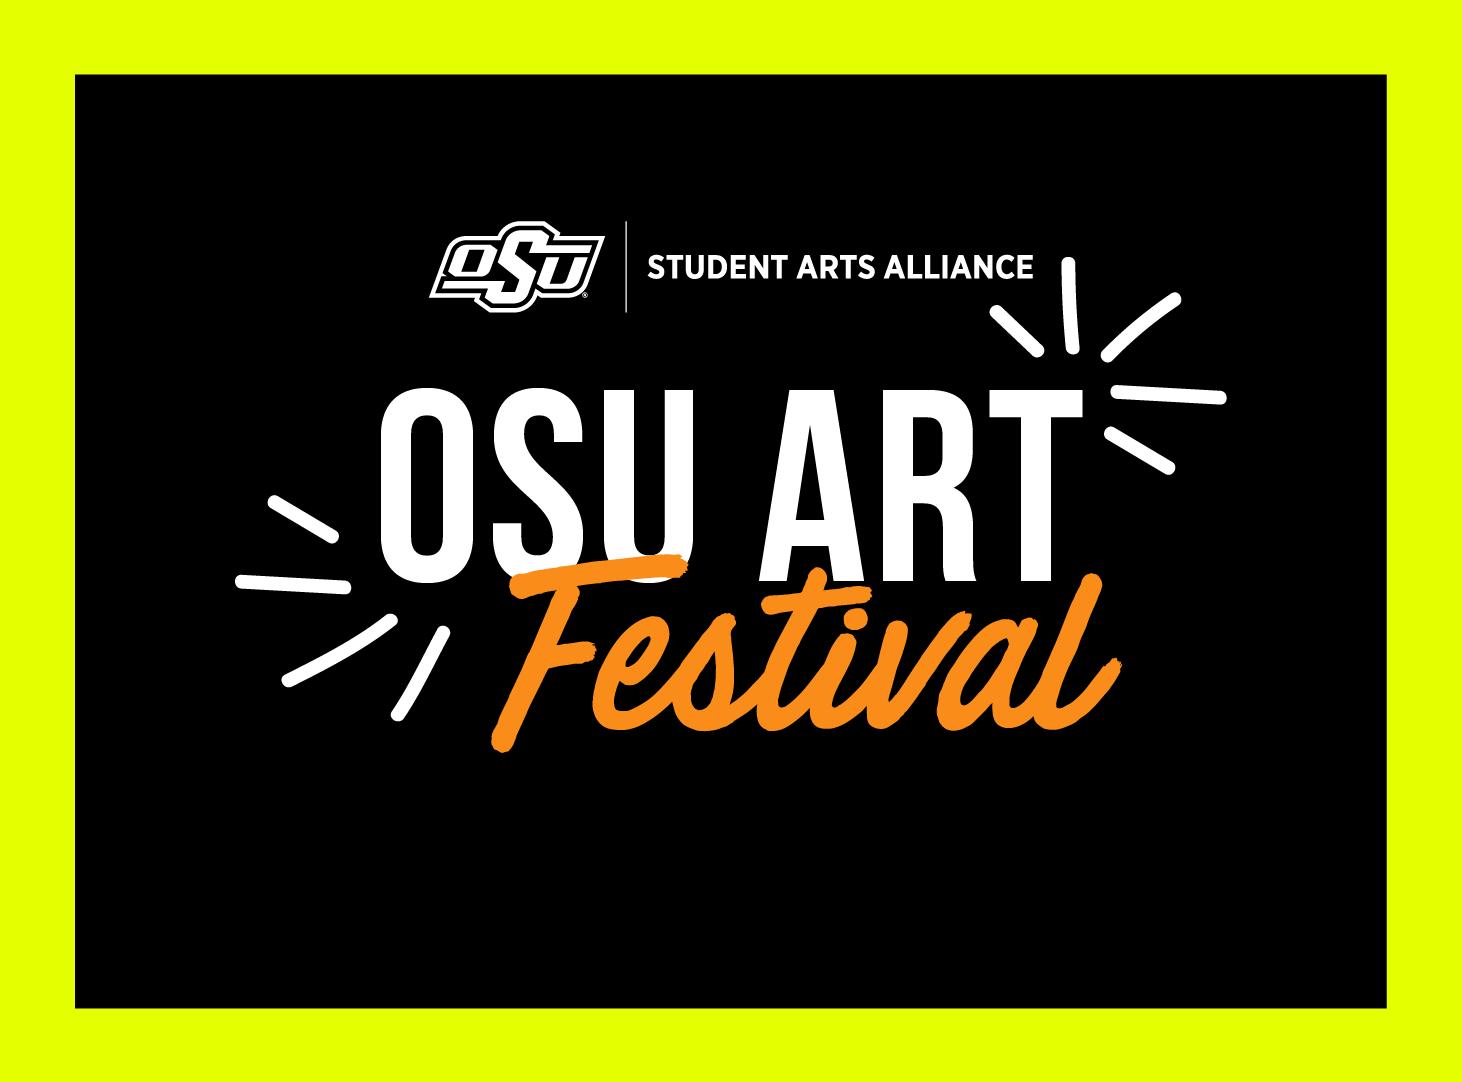 OSU Art Festival Logo